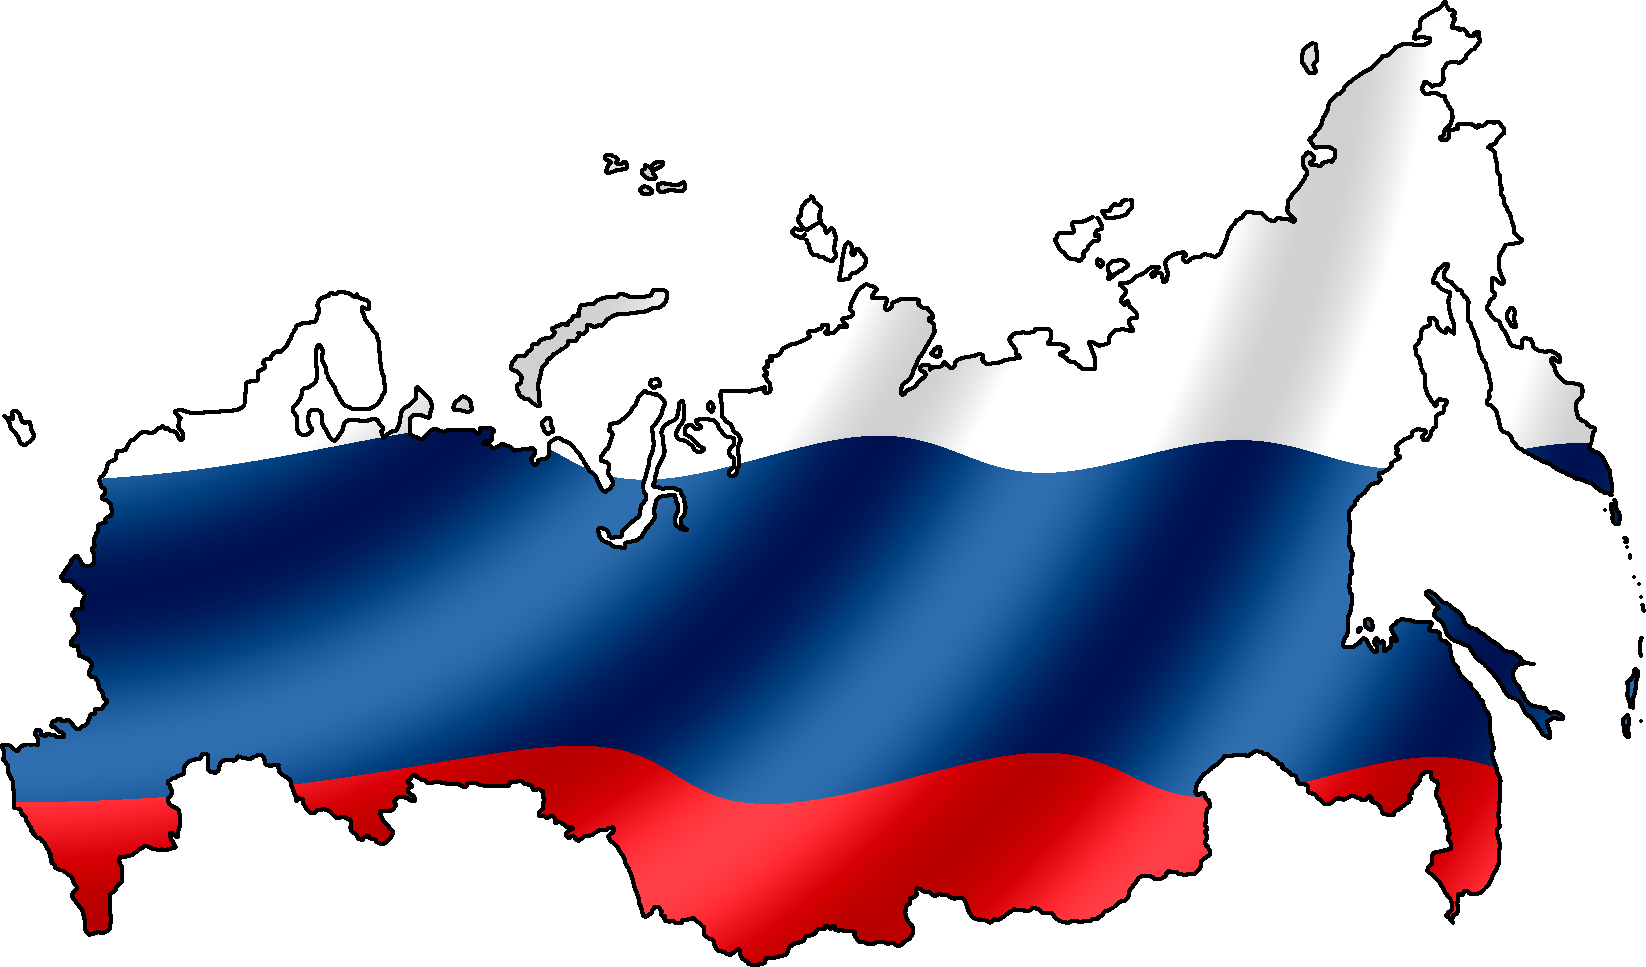 Блокчейн и выборы 2018 в России